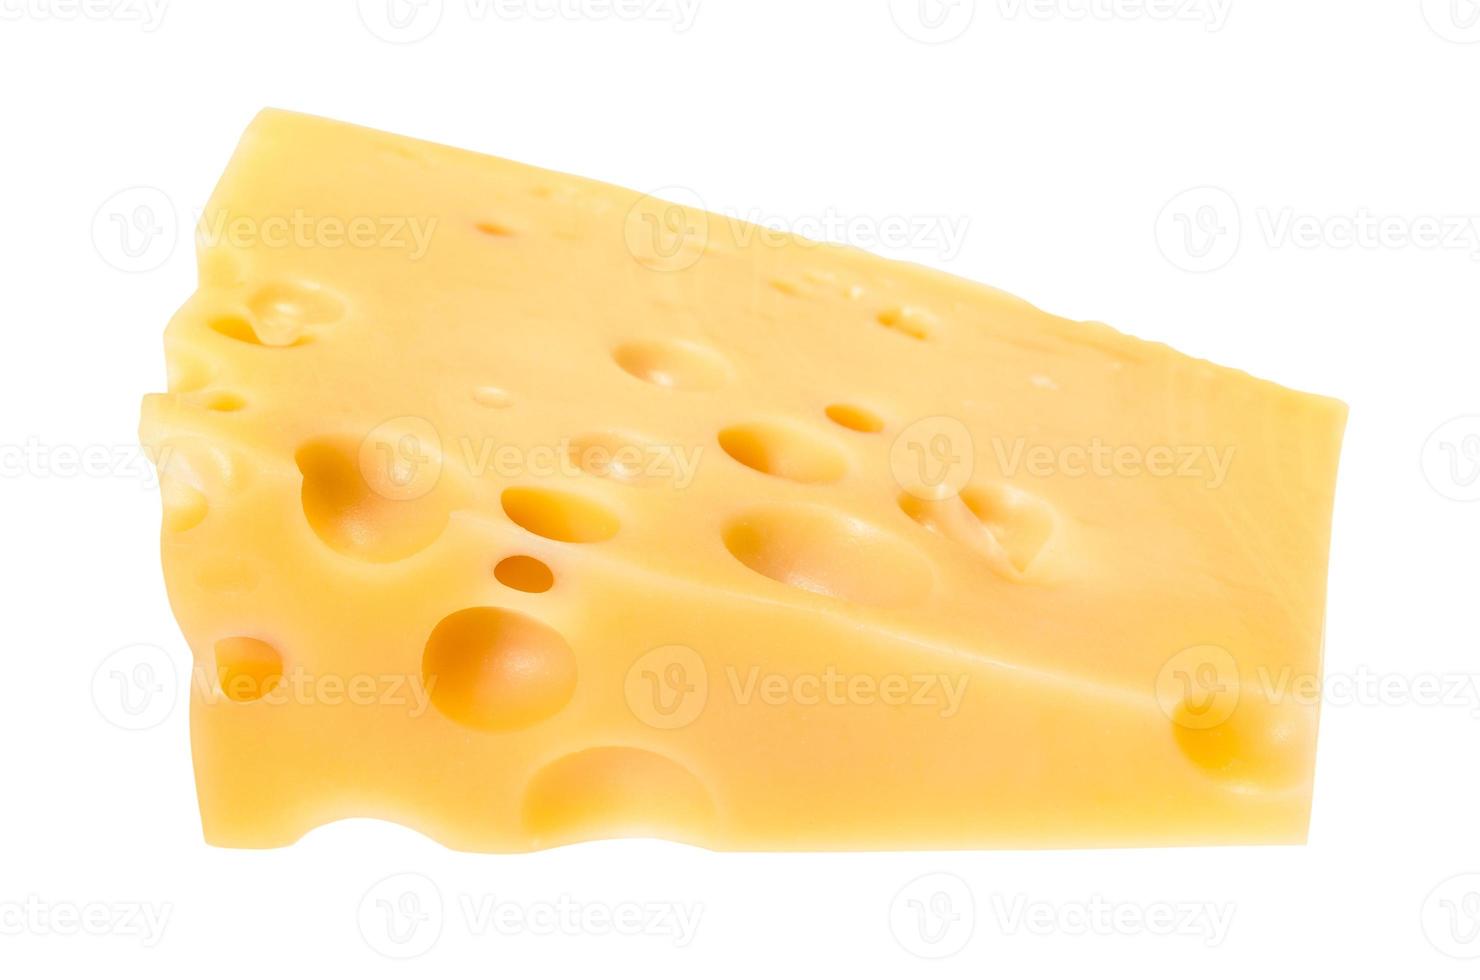 trozo triangular de queso suizo amarillo aislado foto